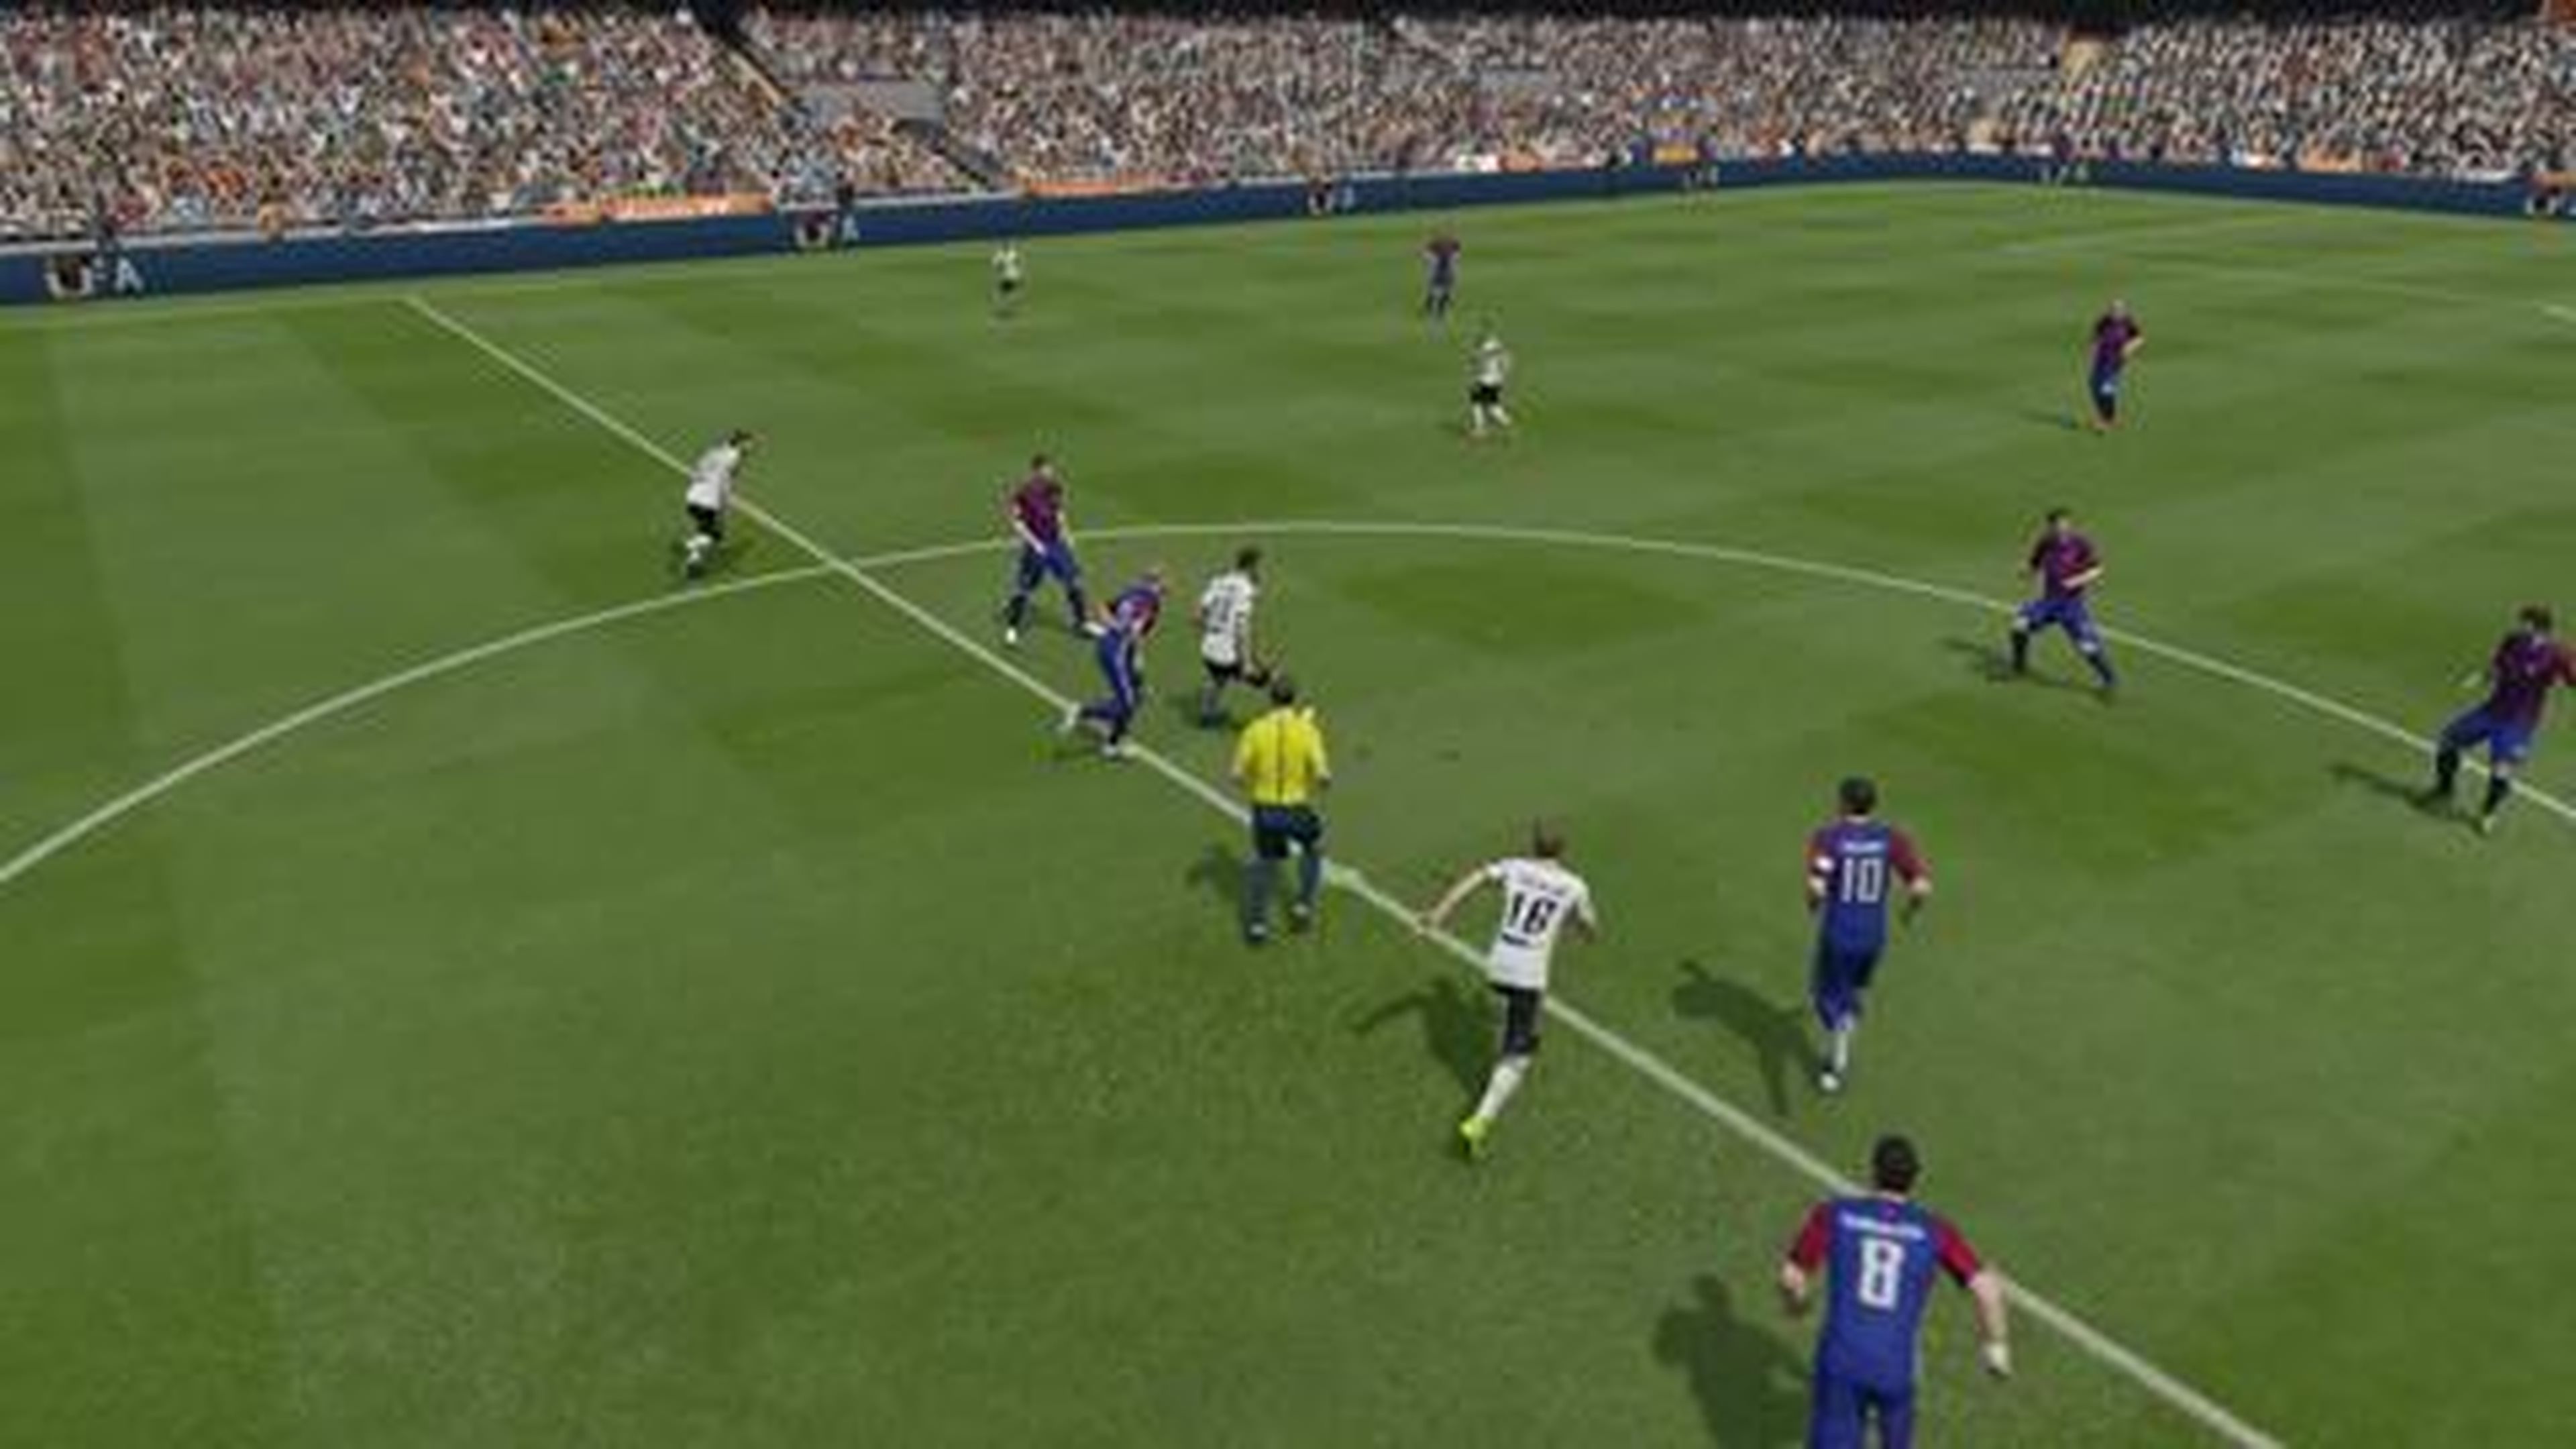 FIFA 15 - Tutorial - Las mejores formaciones [HD]